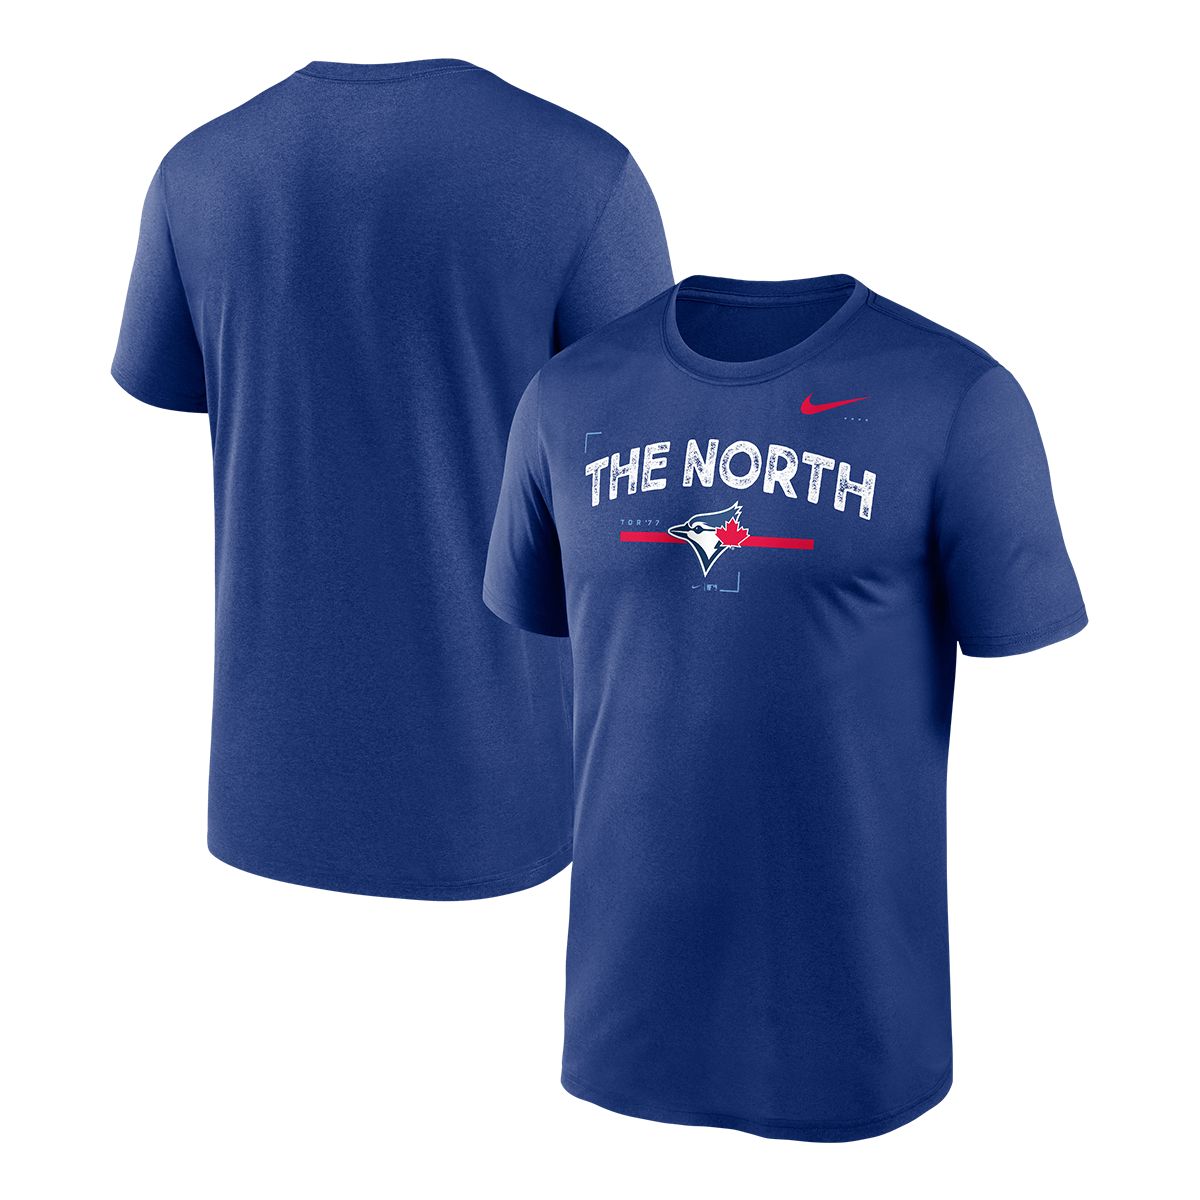 Nike Dri-FIT Legend Logo (MLB Toronto Blue Jays) Men's T-Shirt